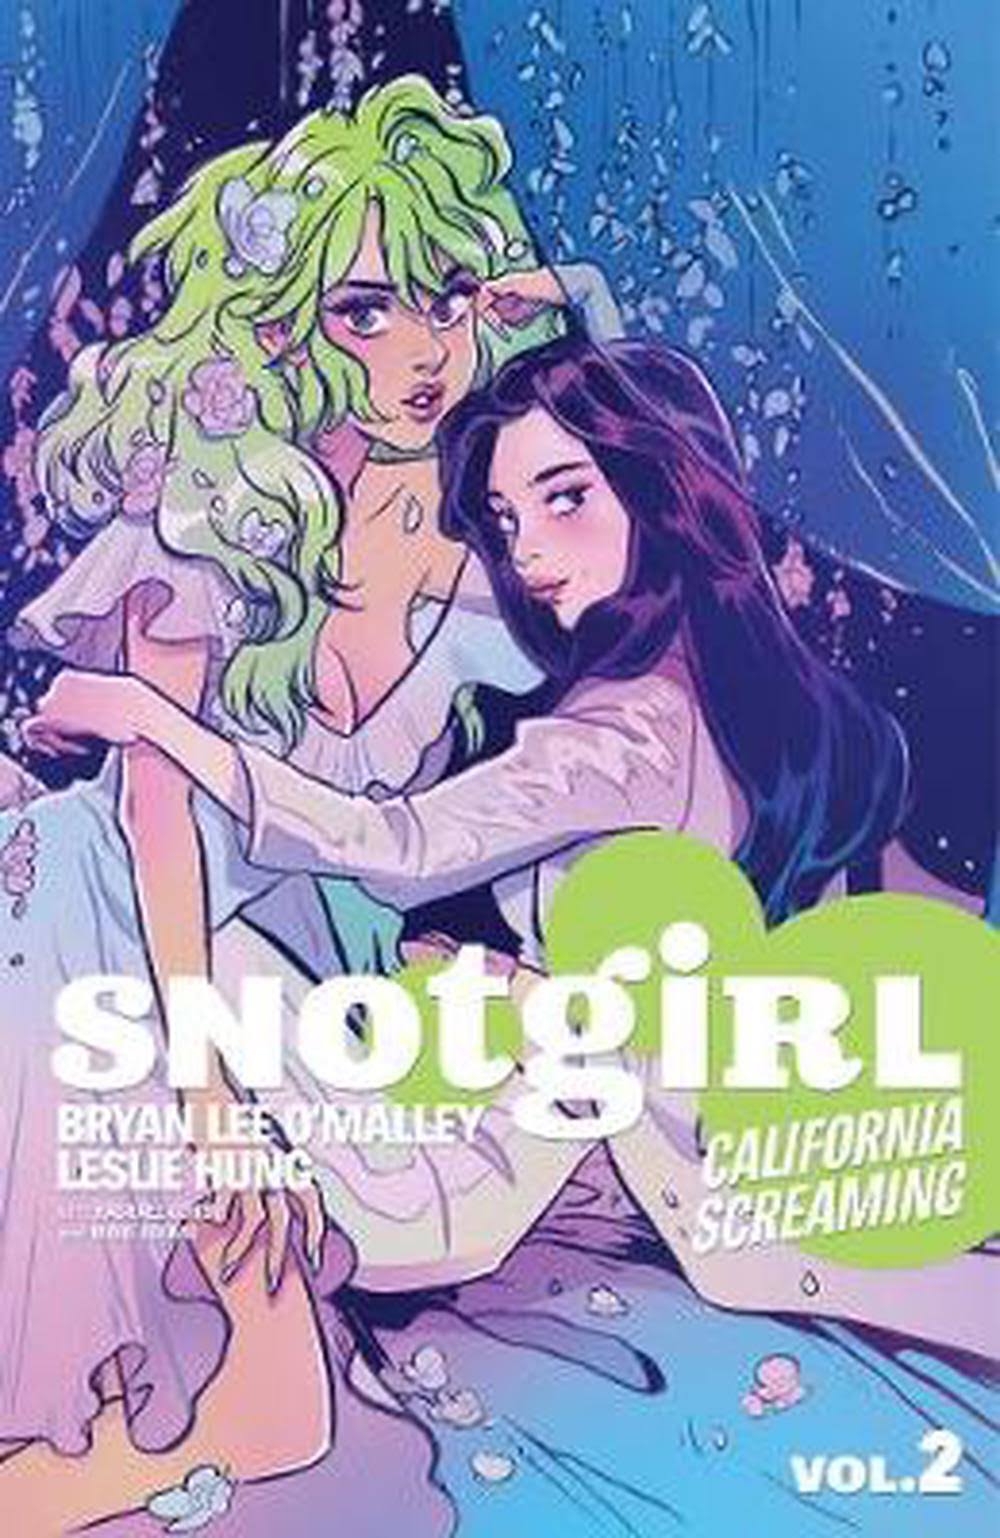 Snotgirl Volume 2: California Screaming - Image Comics